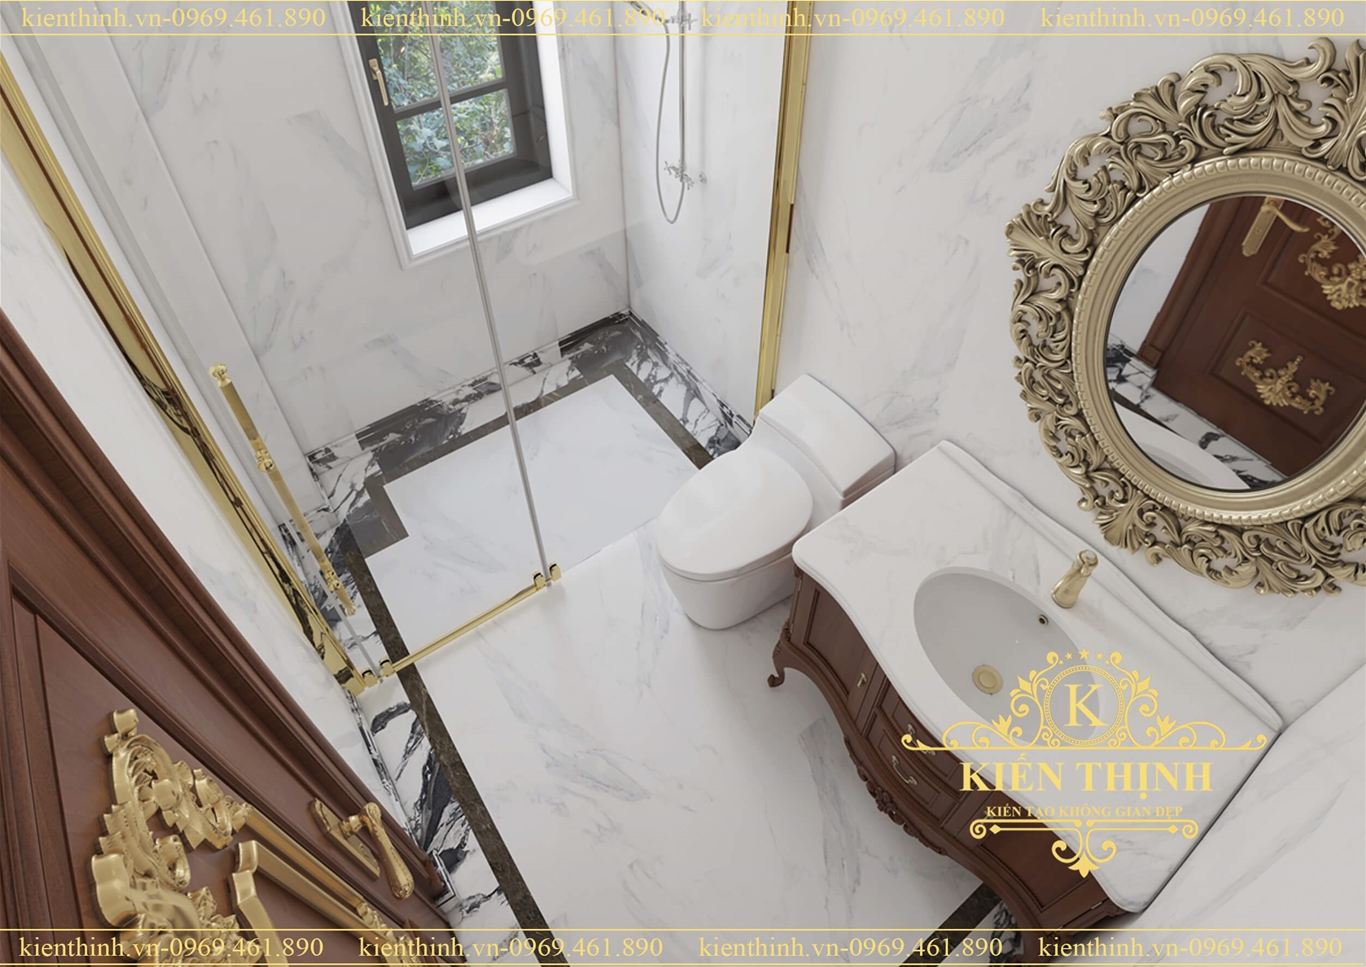 Thiết kế nội thất phòng tắm phong cách tân cổ điển luxury bathroom interior